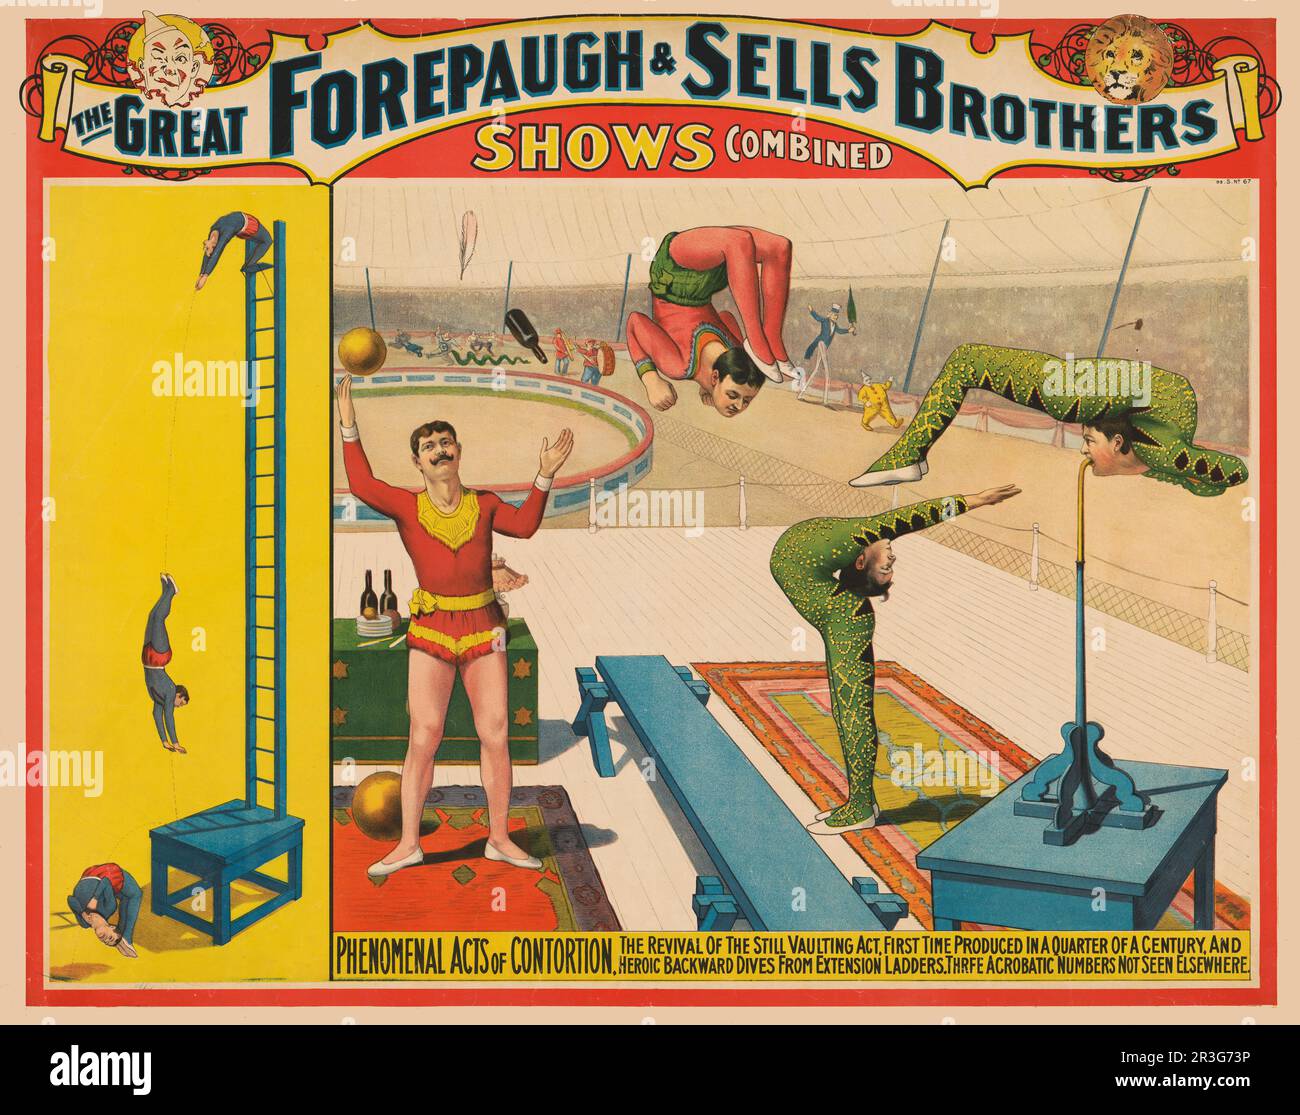 Vintage Adam Forepaugh et vend des Frères affiche de cirque montrant un jongleur et des contortionnistes qui exécutent des actes, vers 1899. Banque D'Images